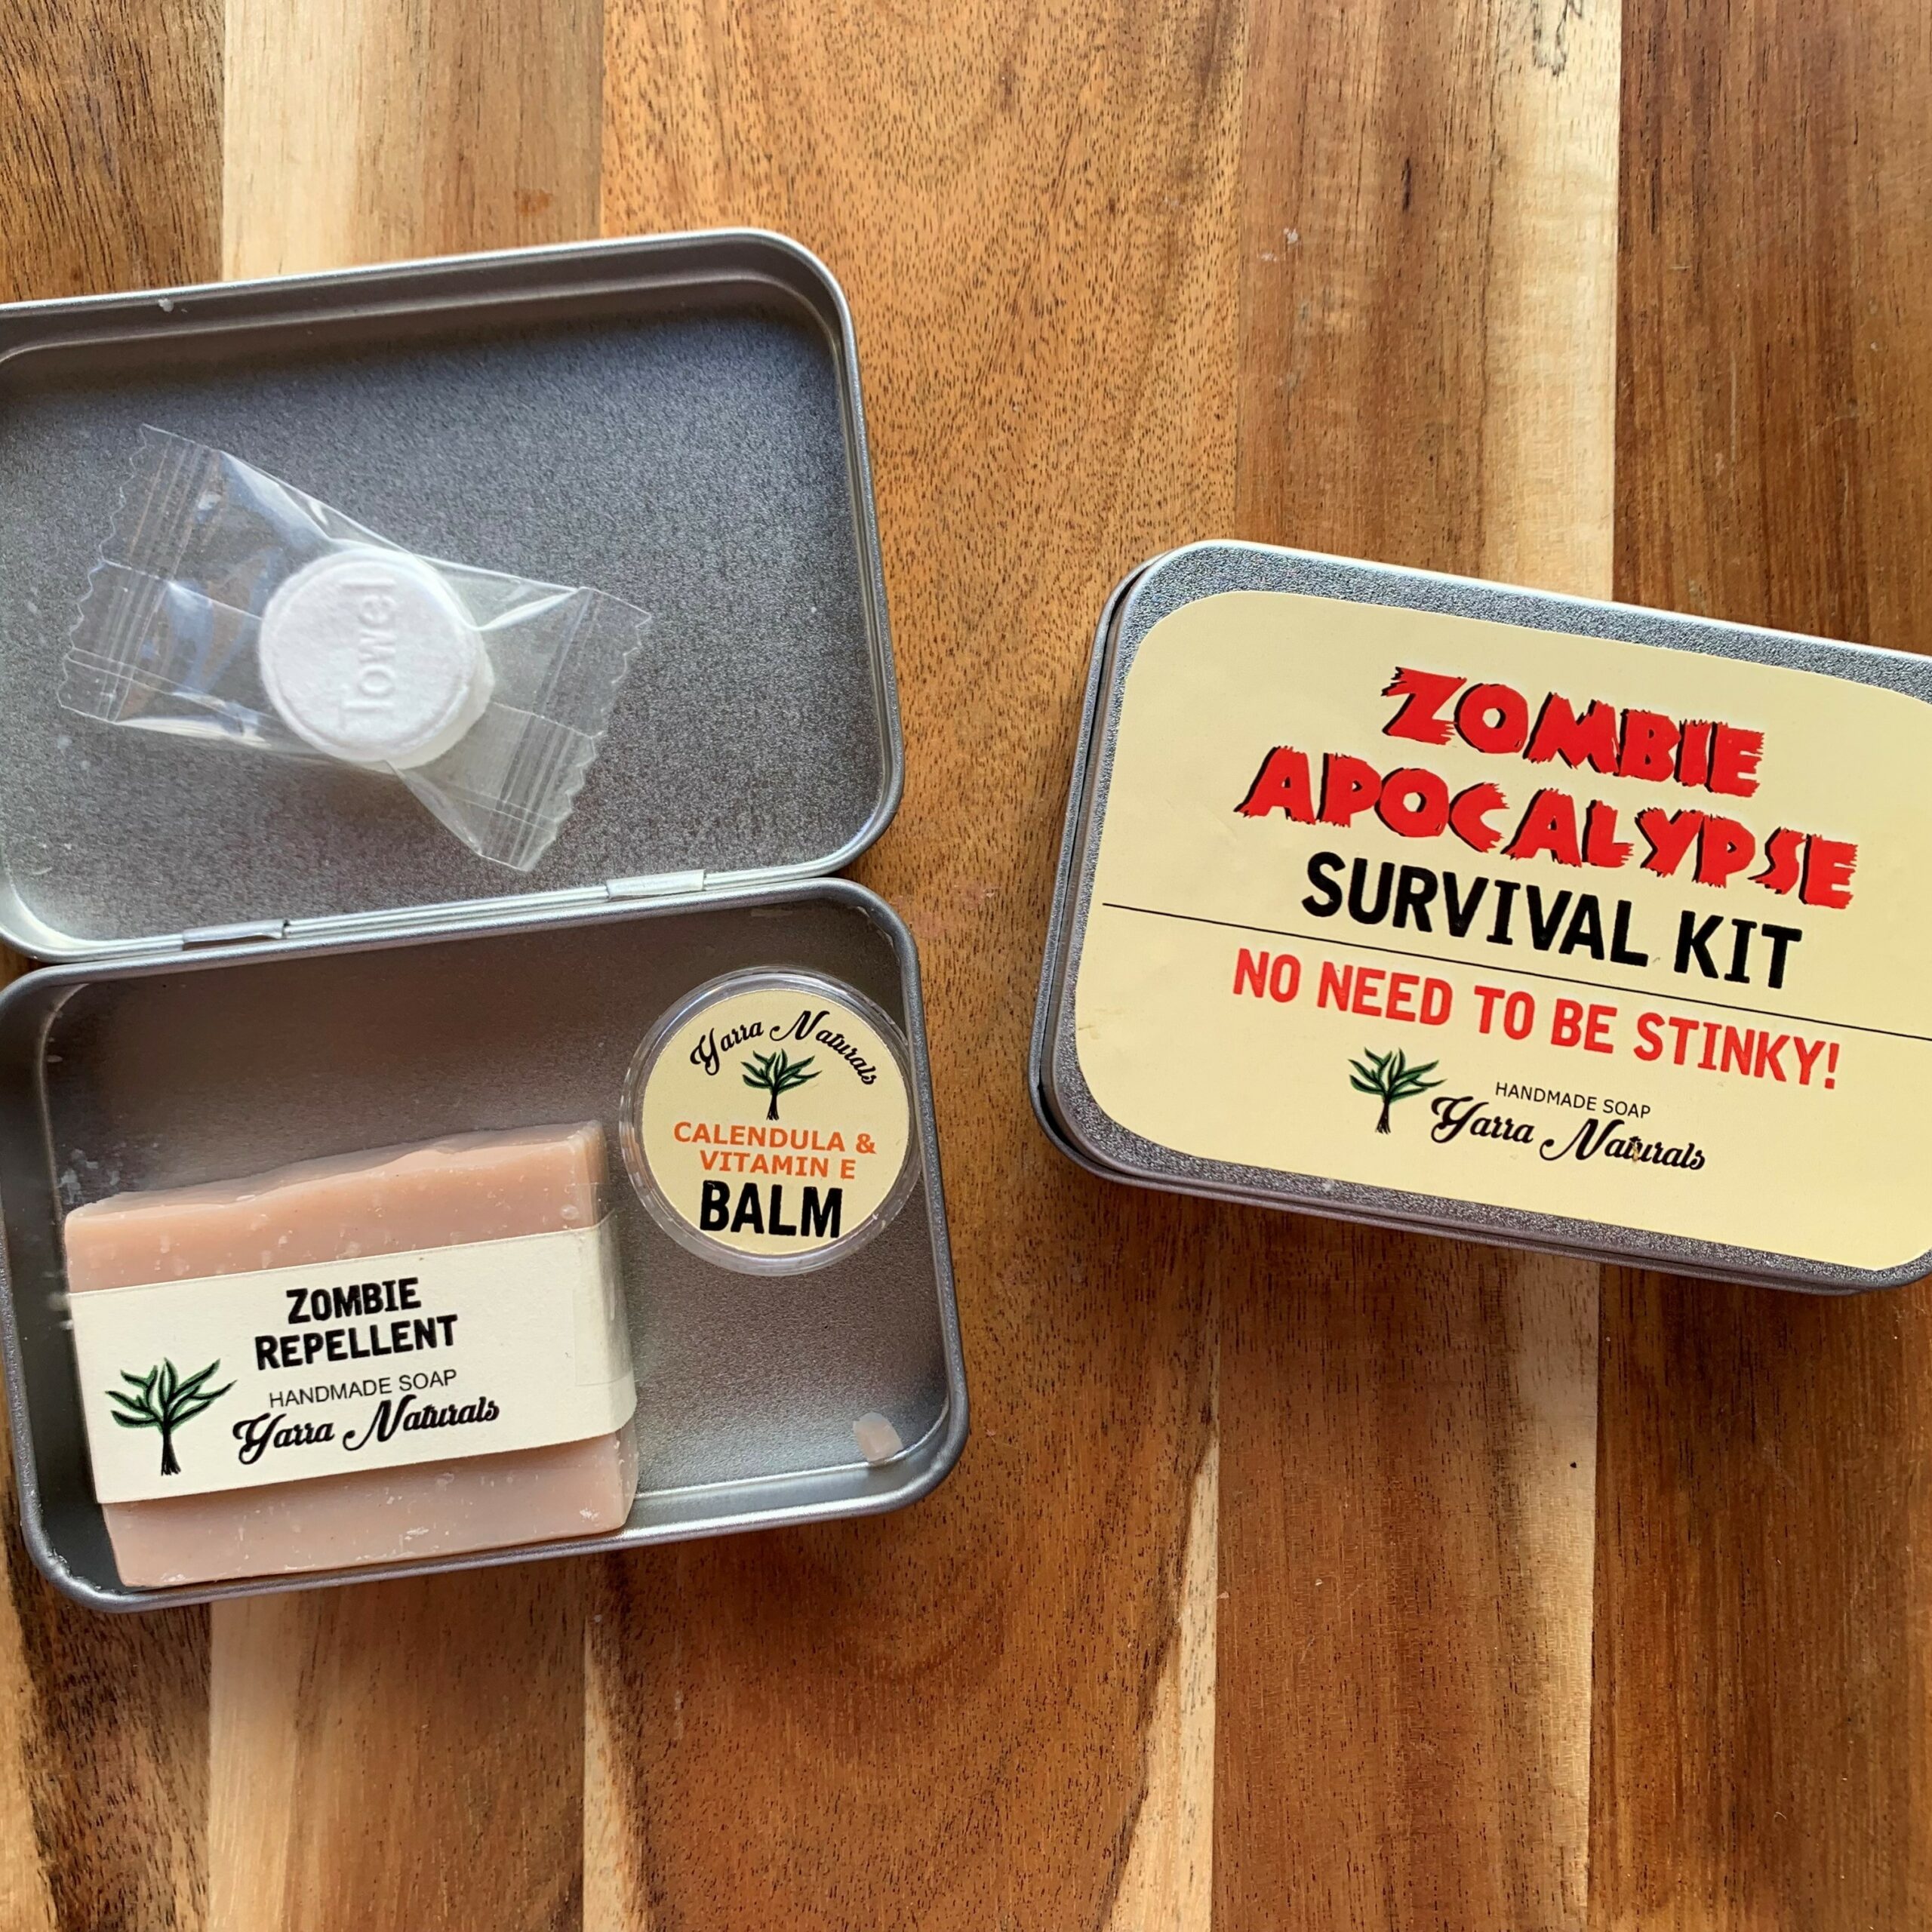 https://www.yarranaturals.com.au/wp-content/uploads/2021/10/Zombie-Apocslypdrr-Survival-Kit-2-1-scaled.jpg